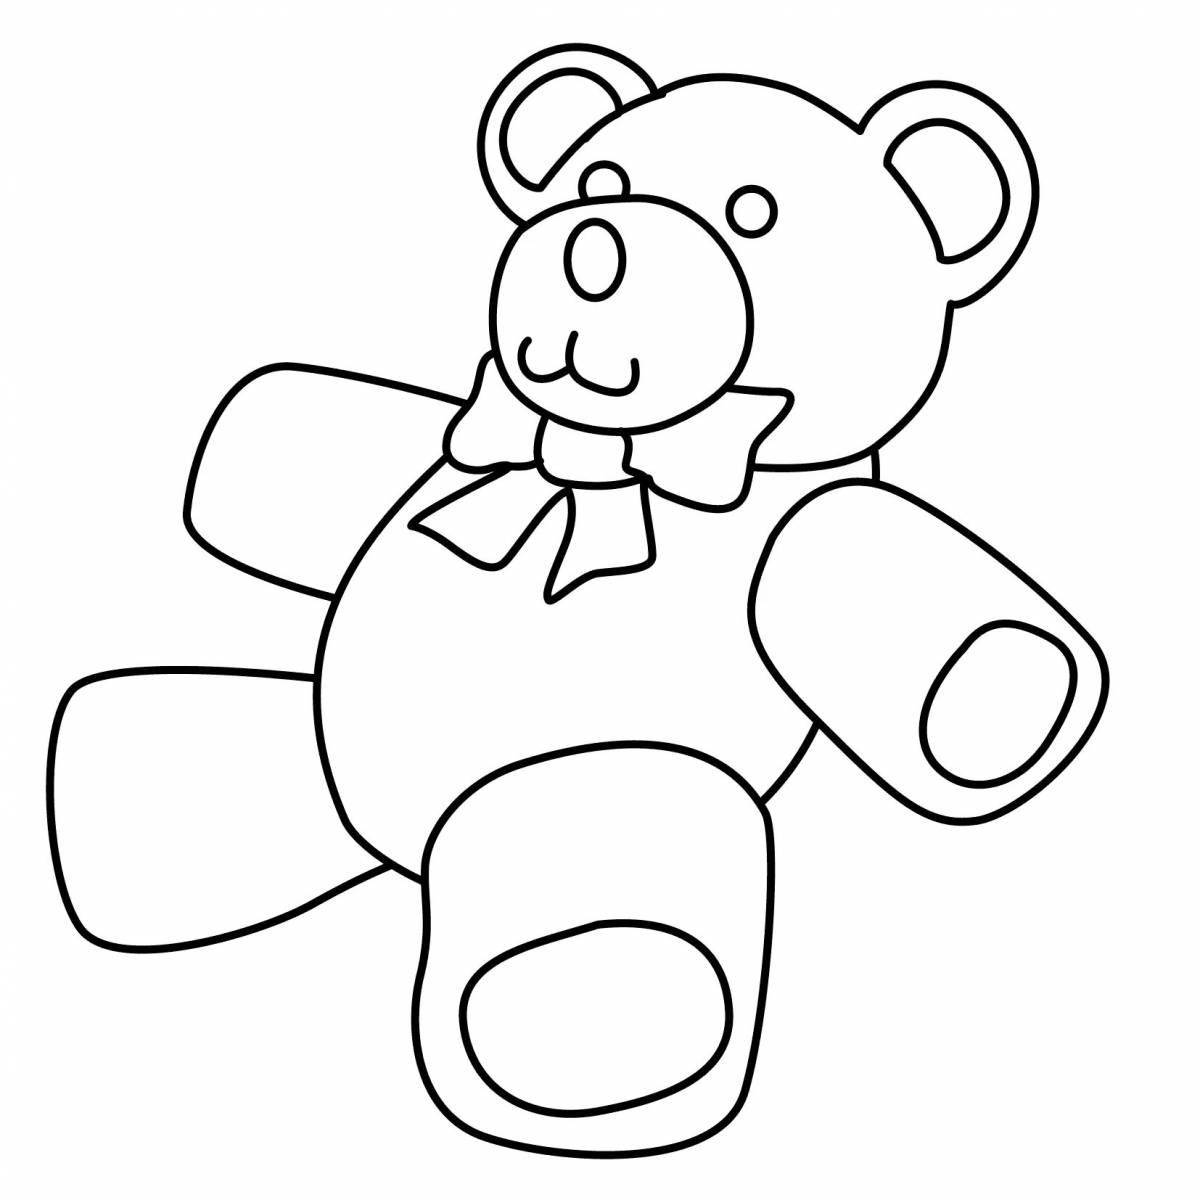 Happy teddy bear coloring page